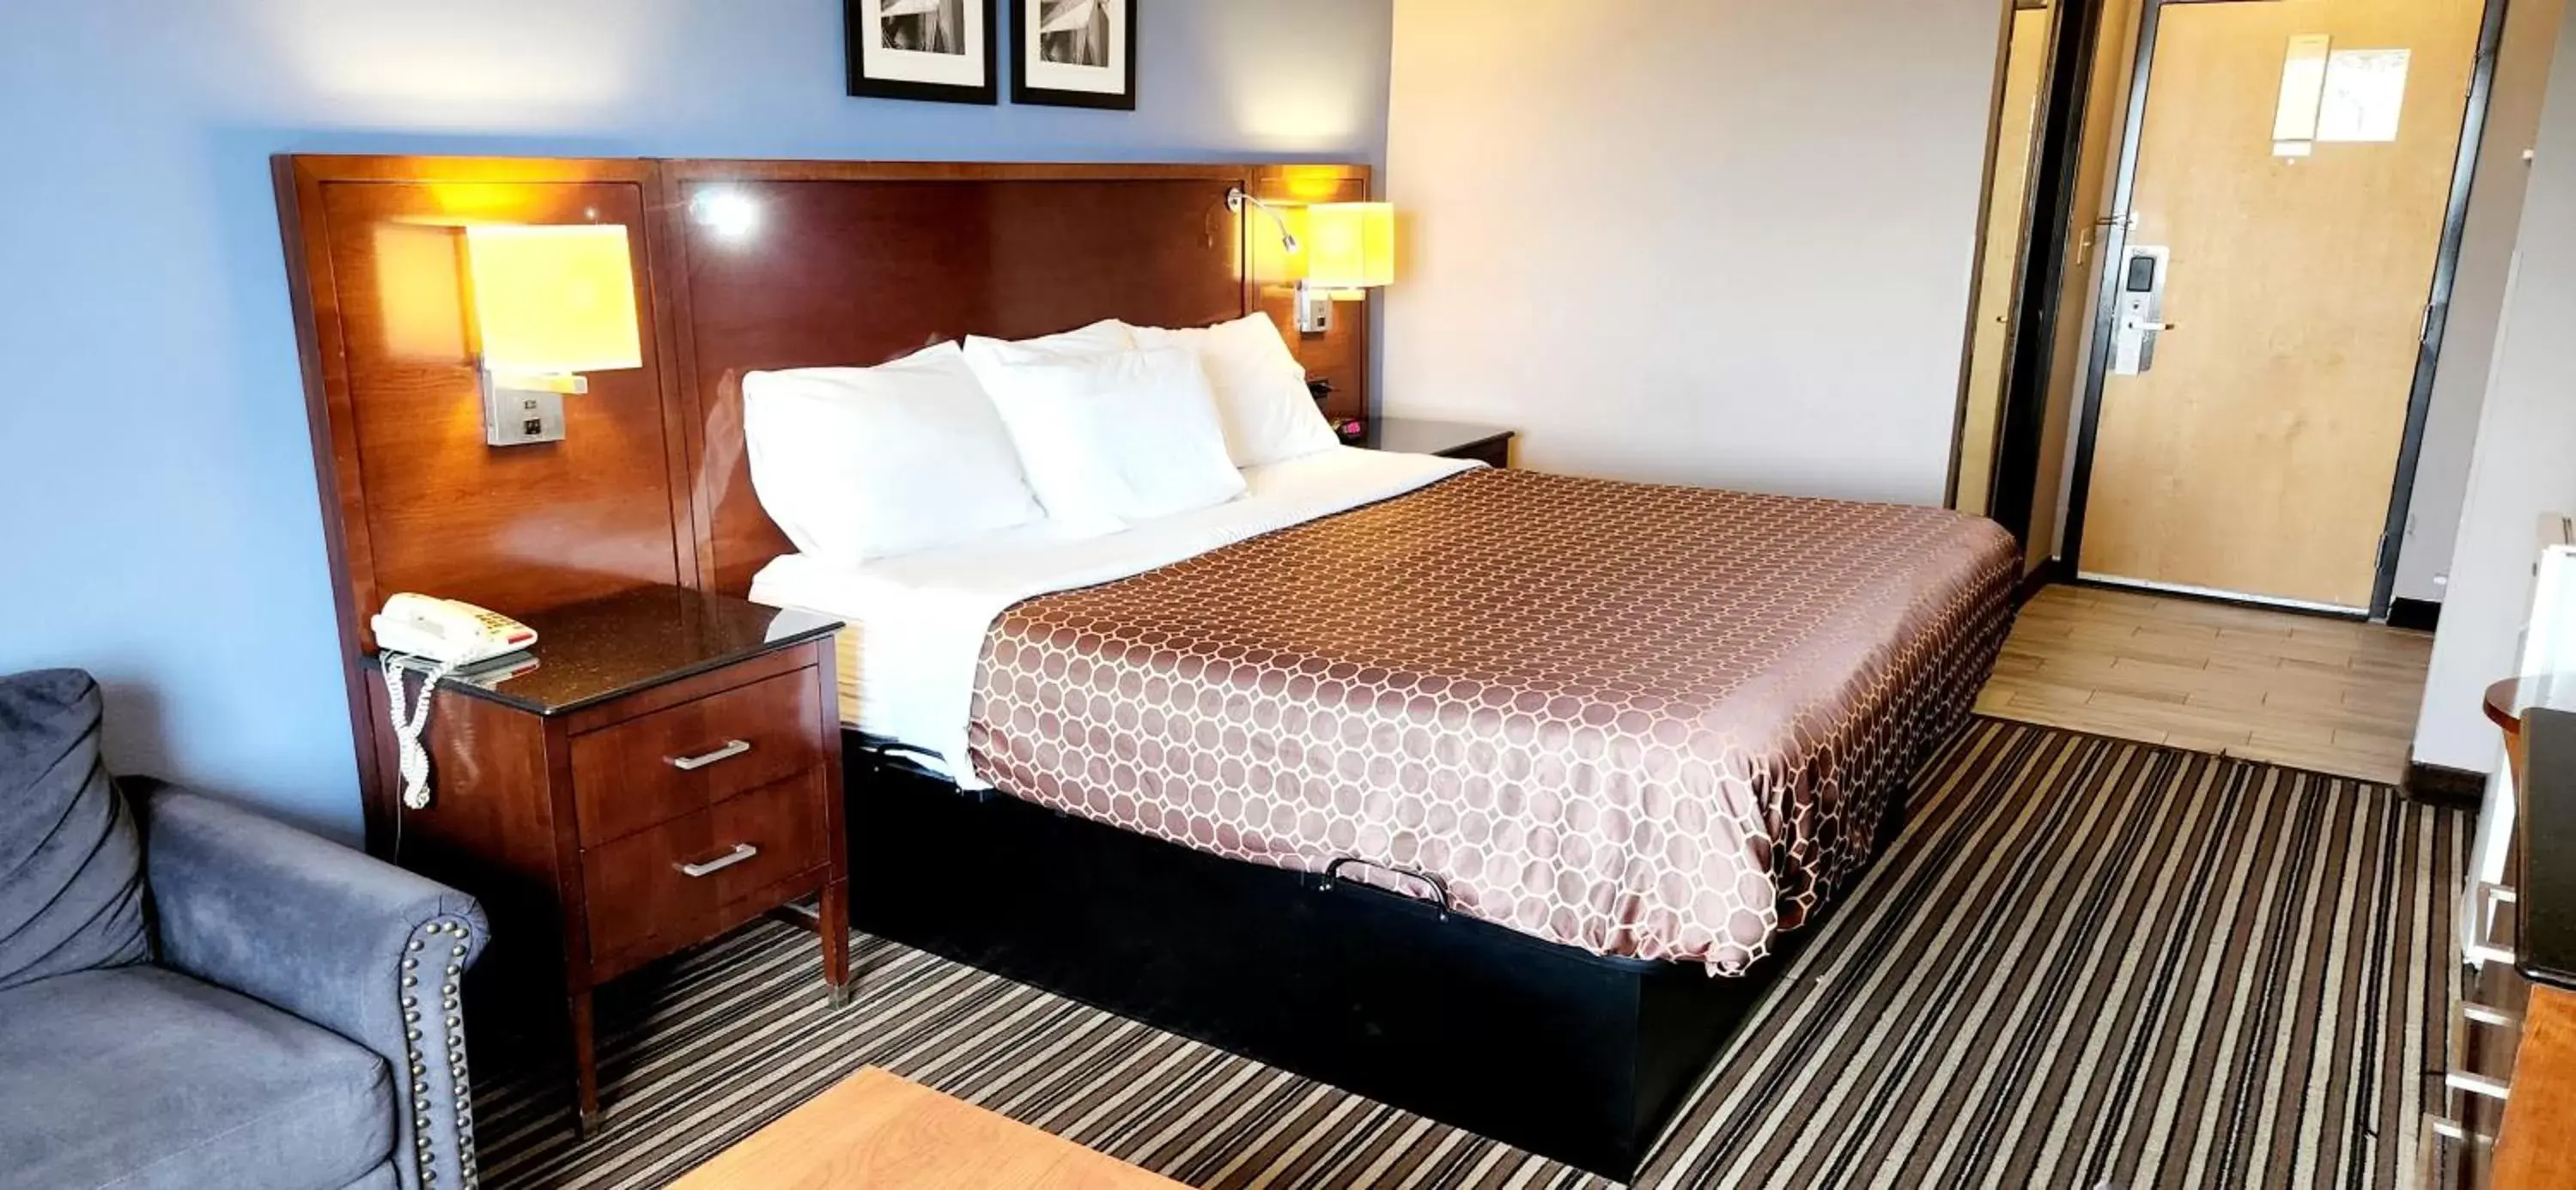 Bedroom, Bed in Americas Best Value Inn & Suites-Foley